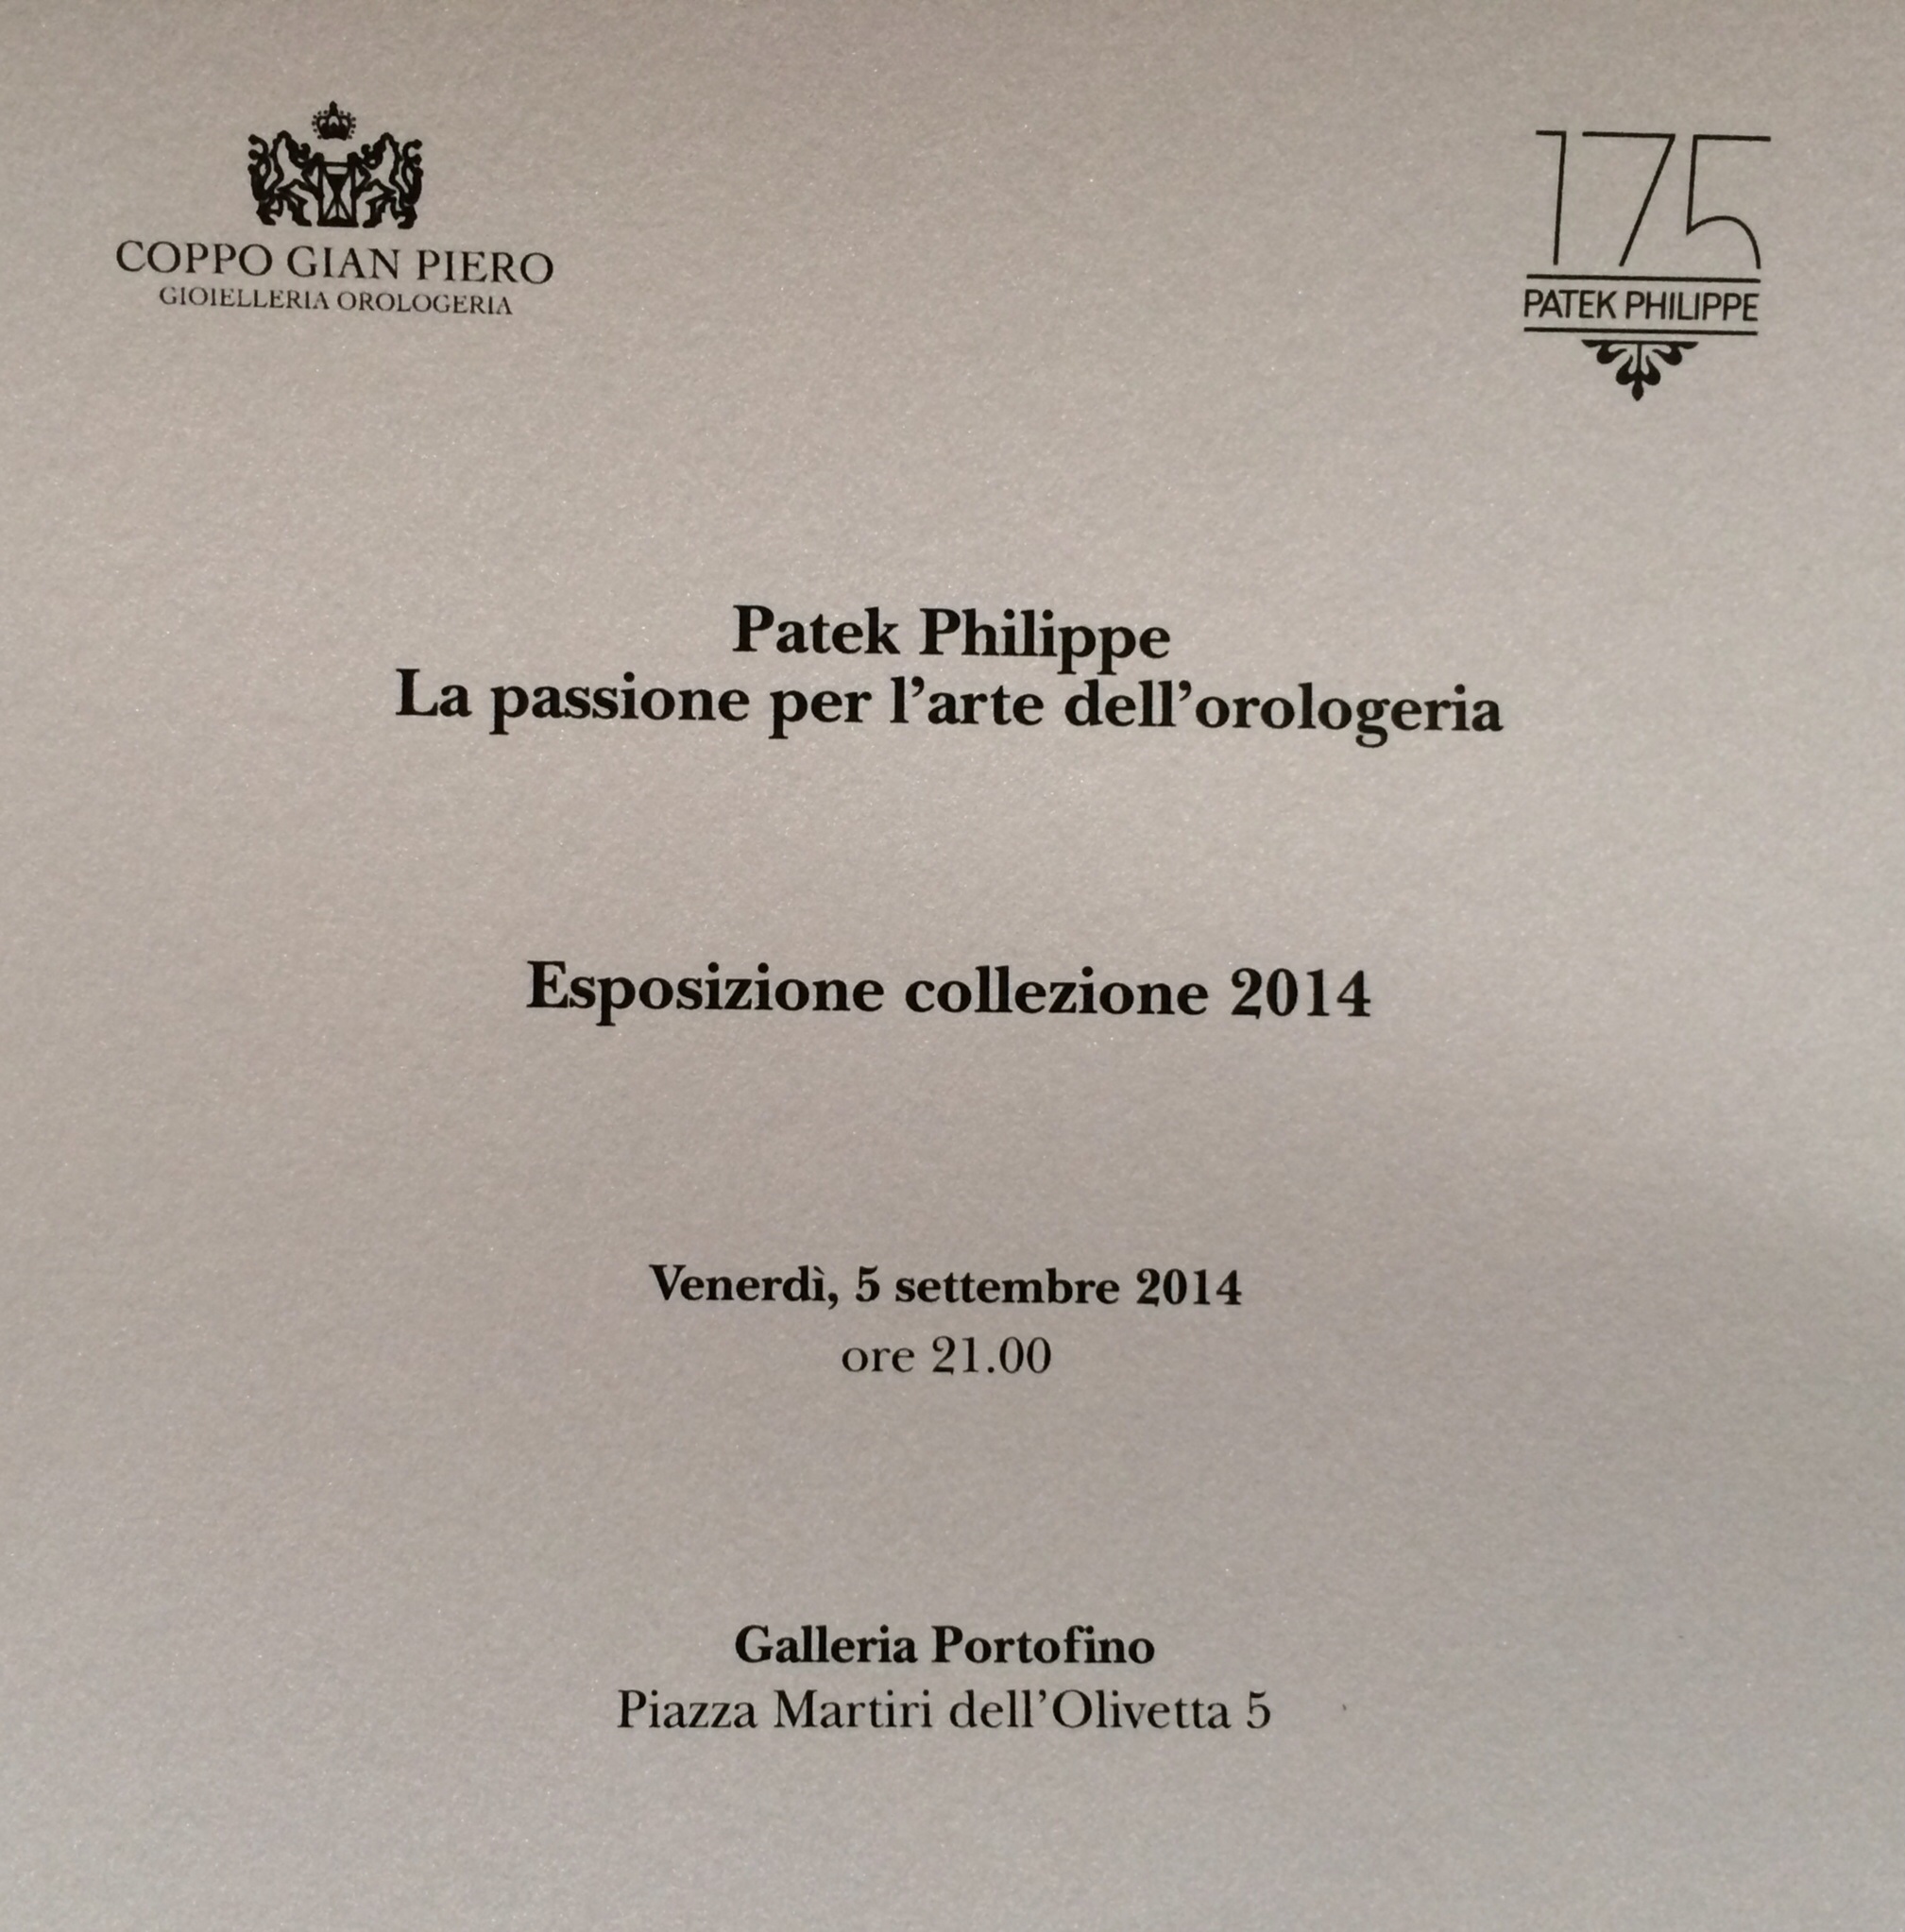 2014 Patek Philippe 175th Anniversary